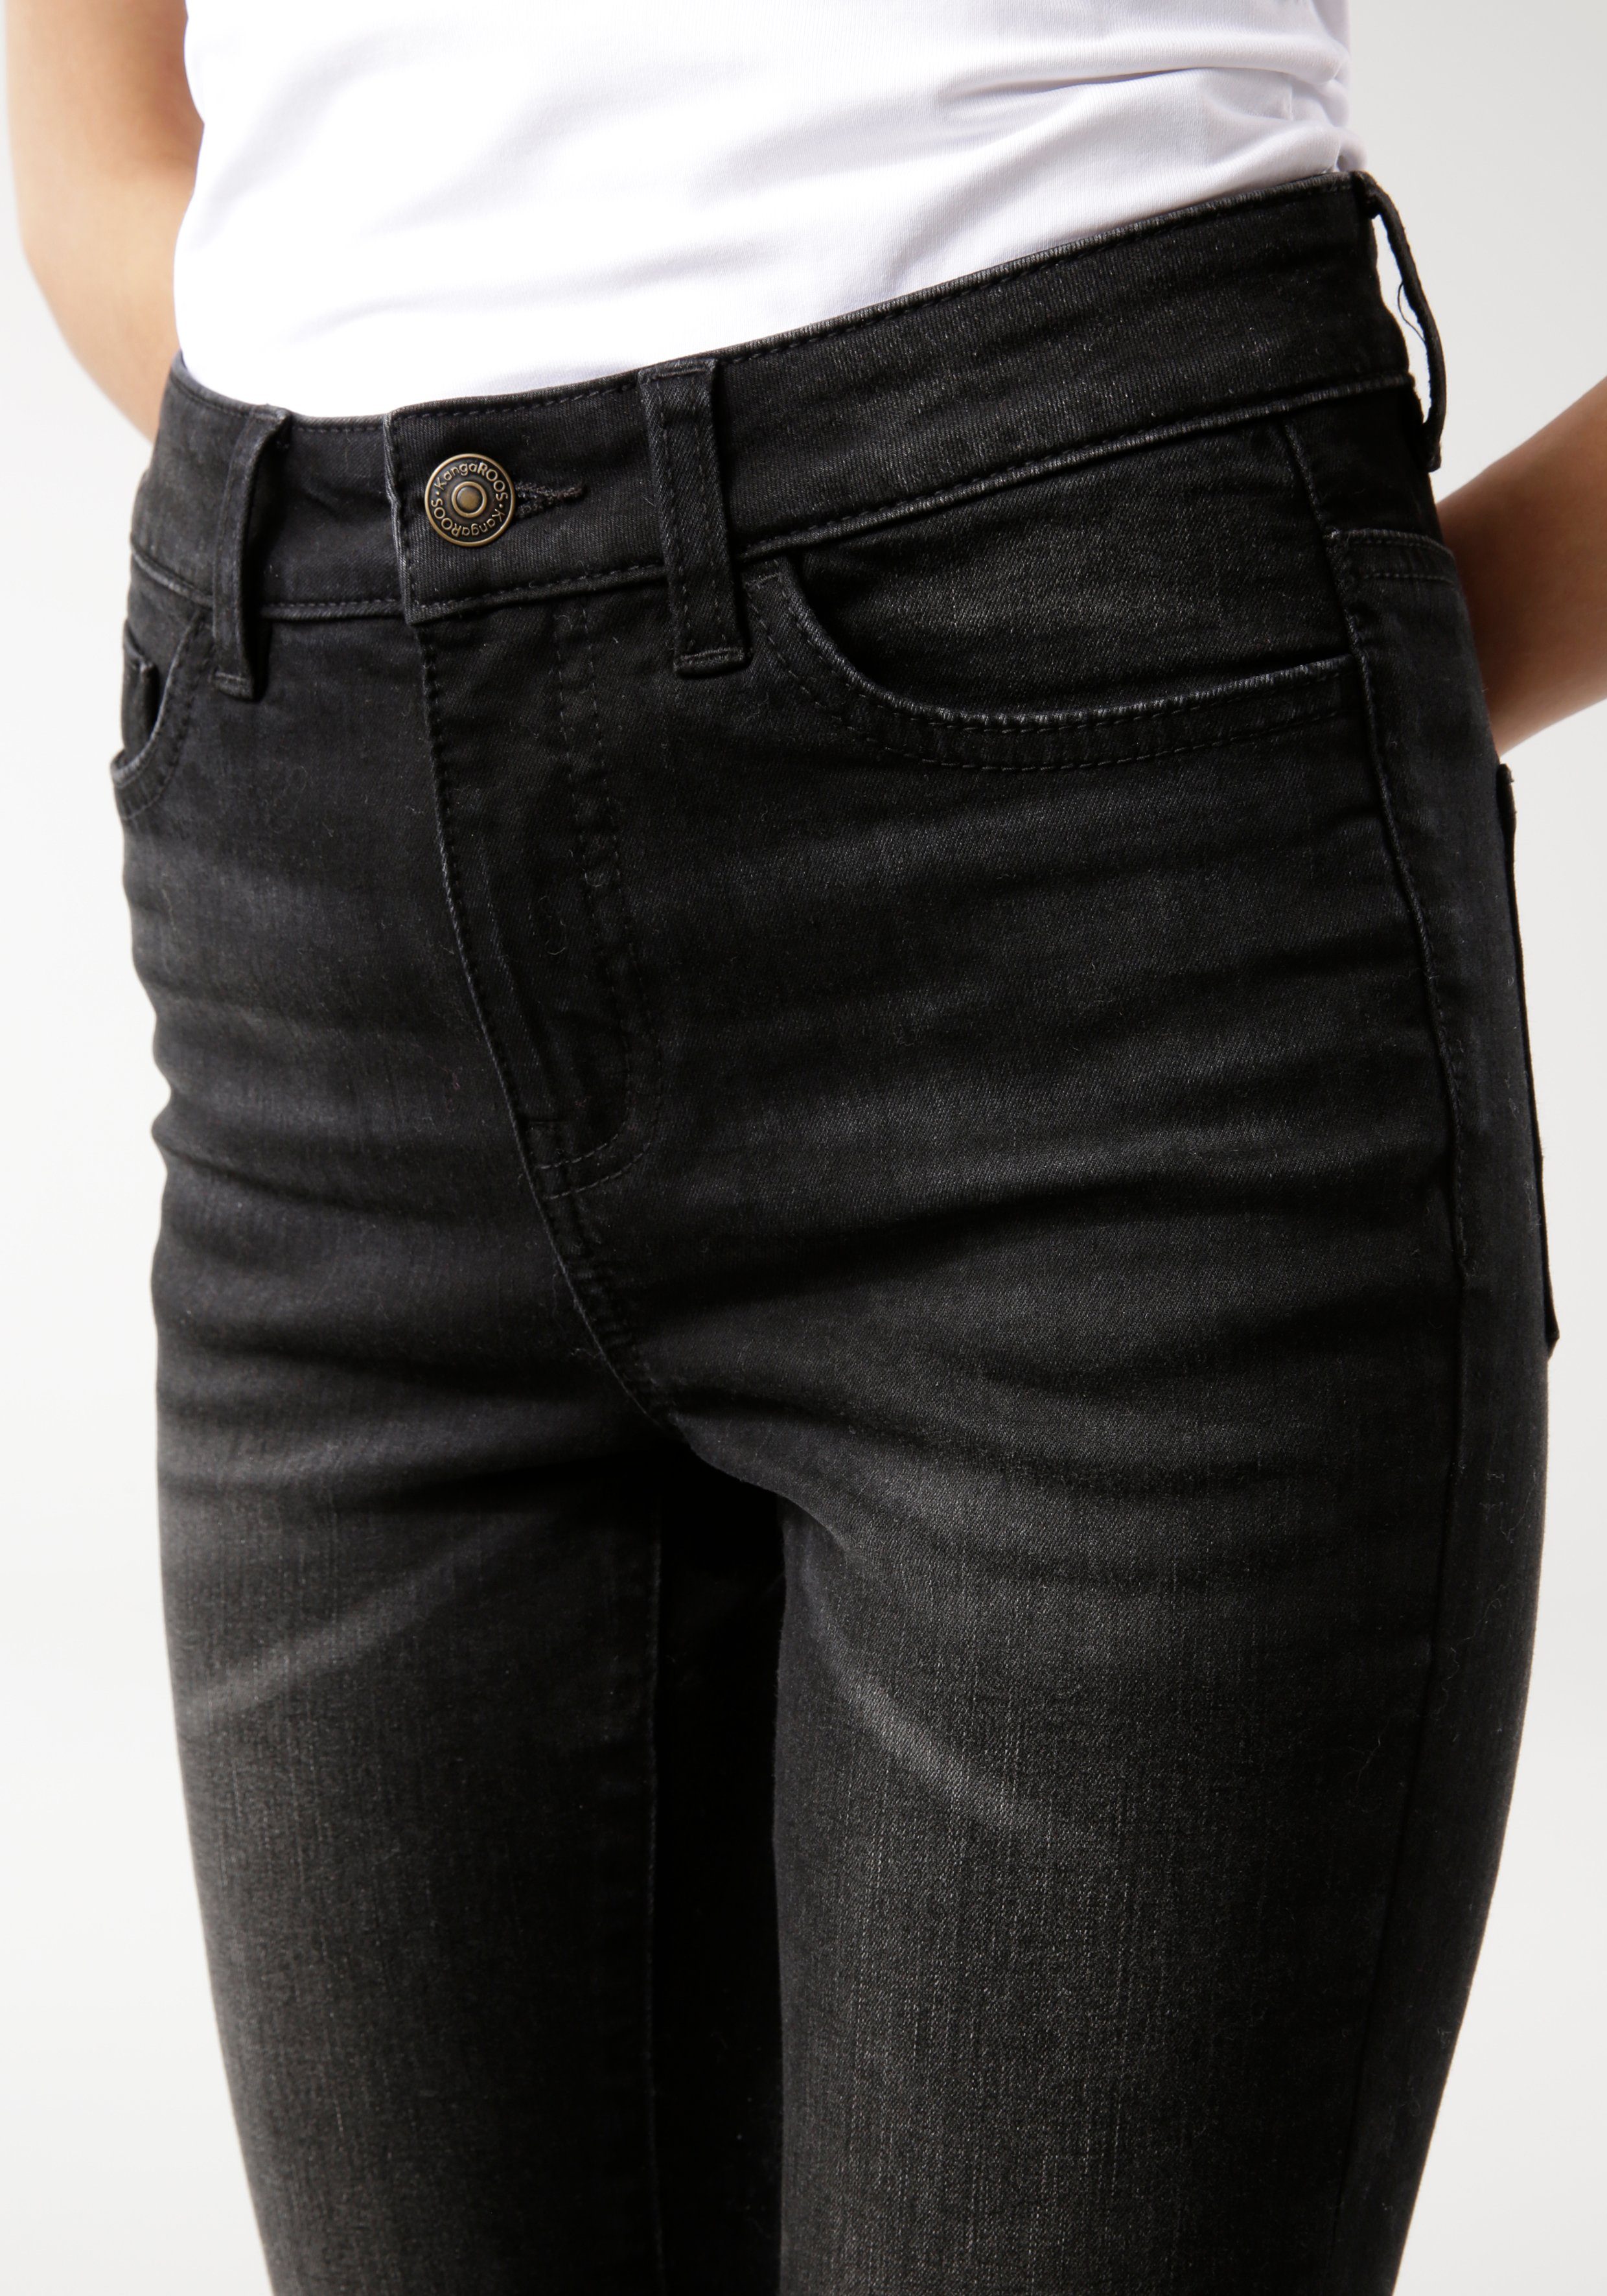 used-Effekt 5-Pocket-Jeans HIGH RISE mit SUPER black-used KangaROOS SKINNY